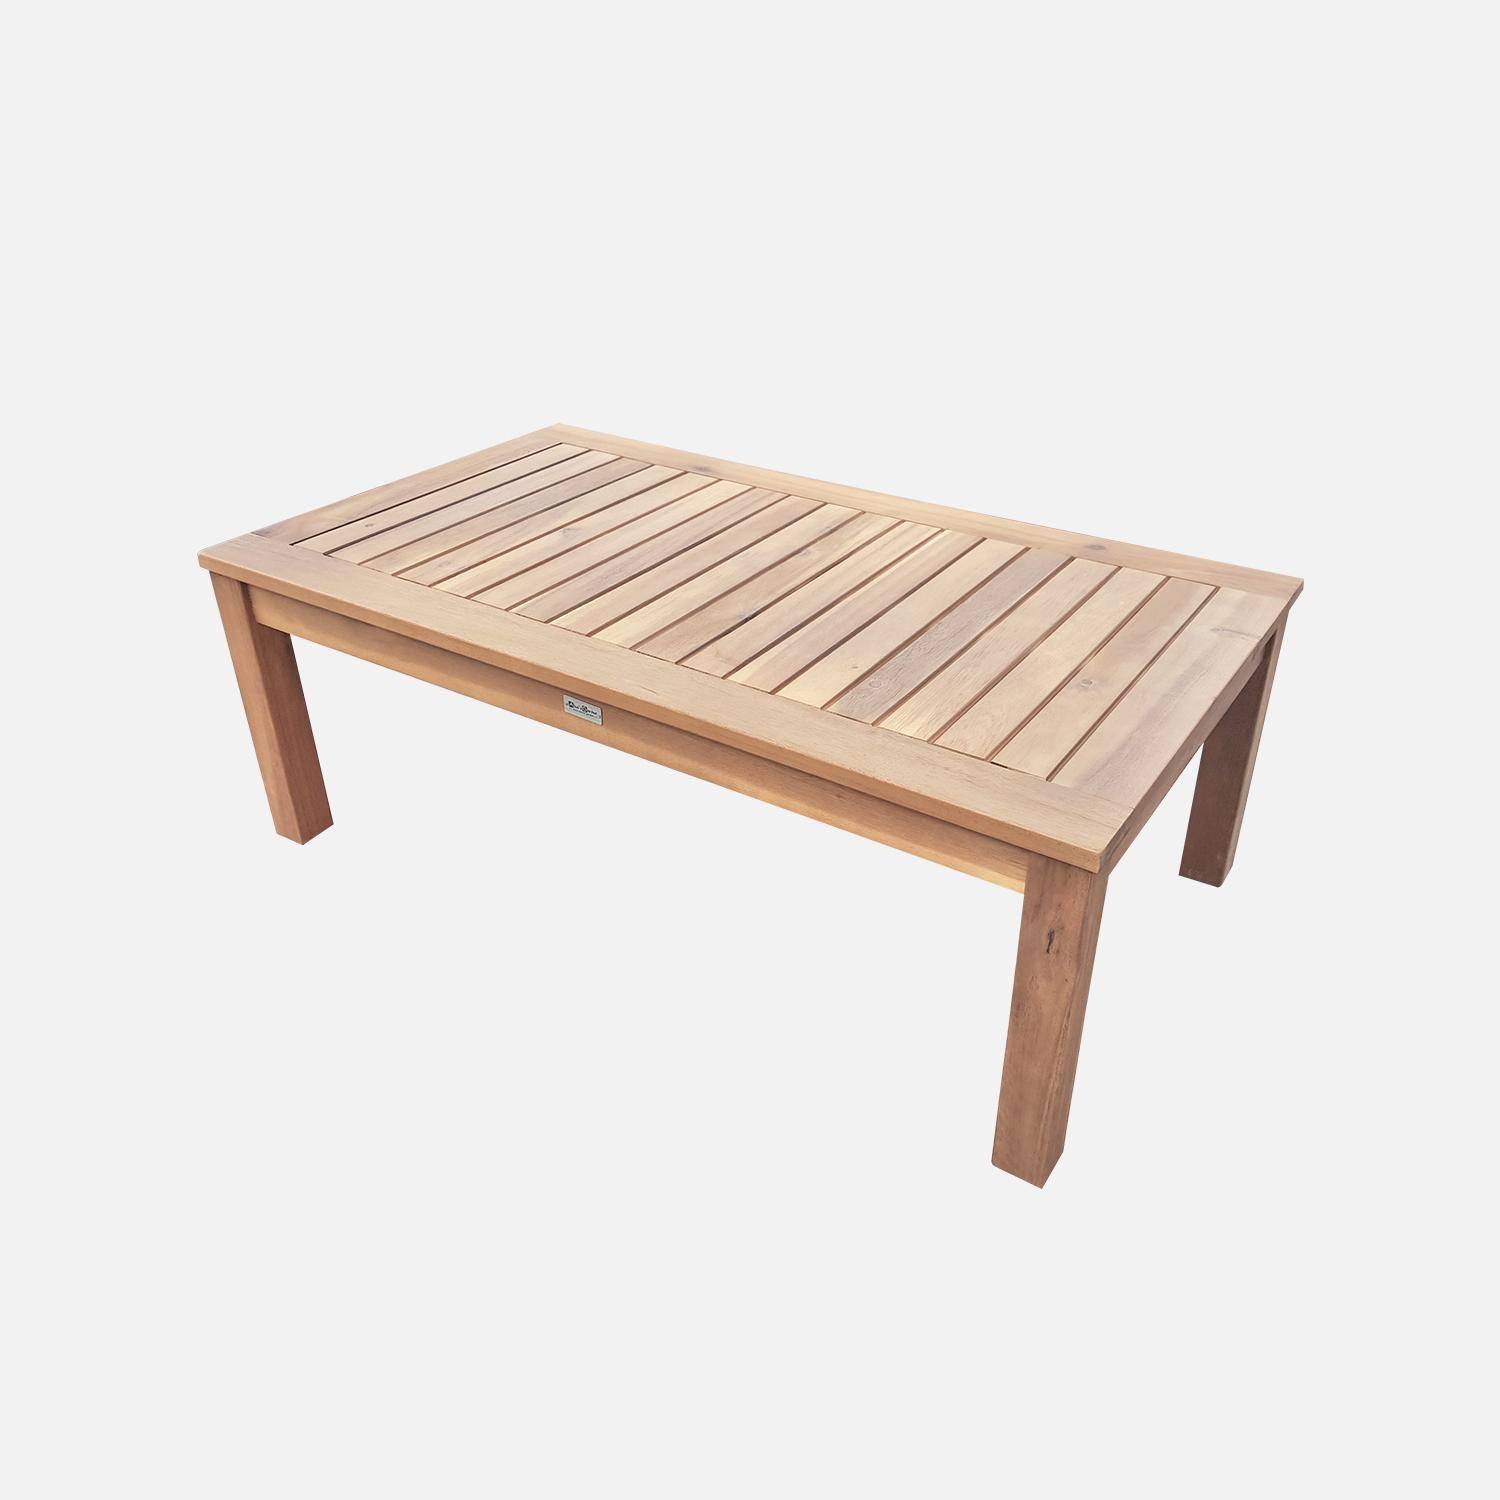 Gartengarnitur aus Holz 4 Sitze - Ushuaïa - graue Kissen, Sofa, Sessel und Couchtisch aus Akazie, Design Photo7